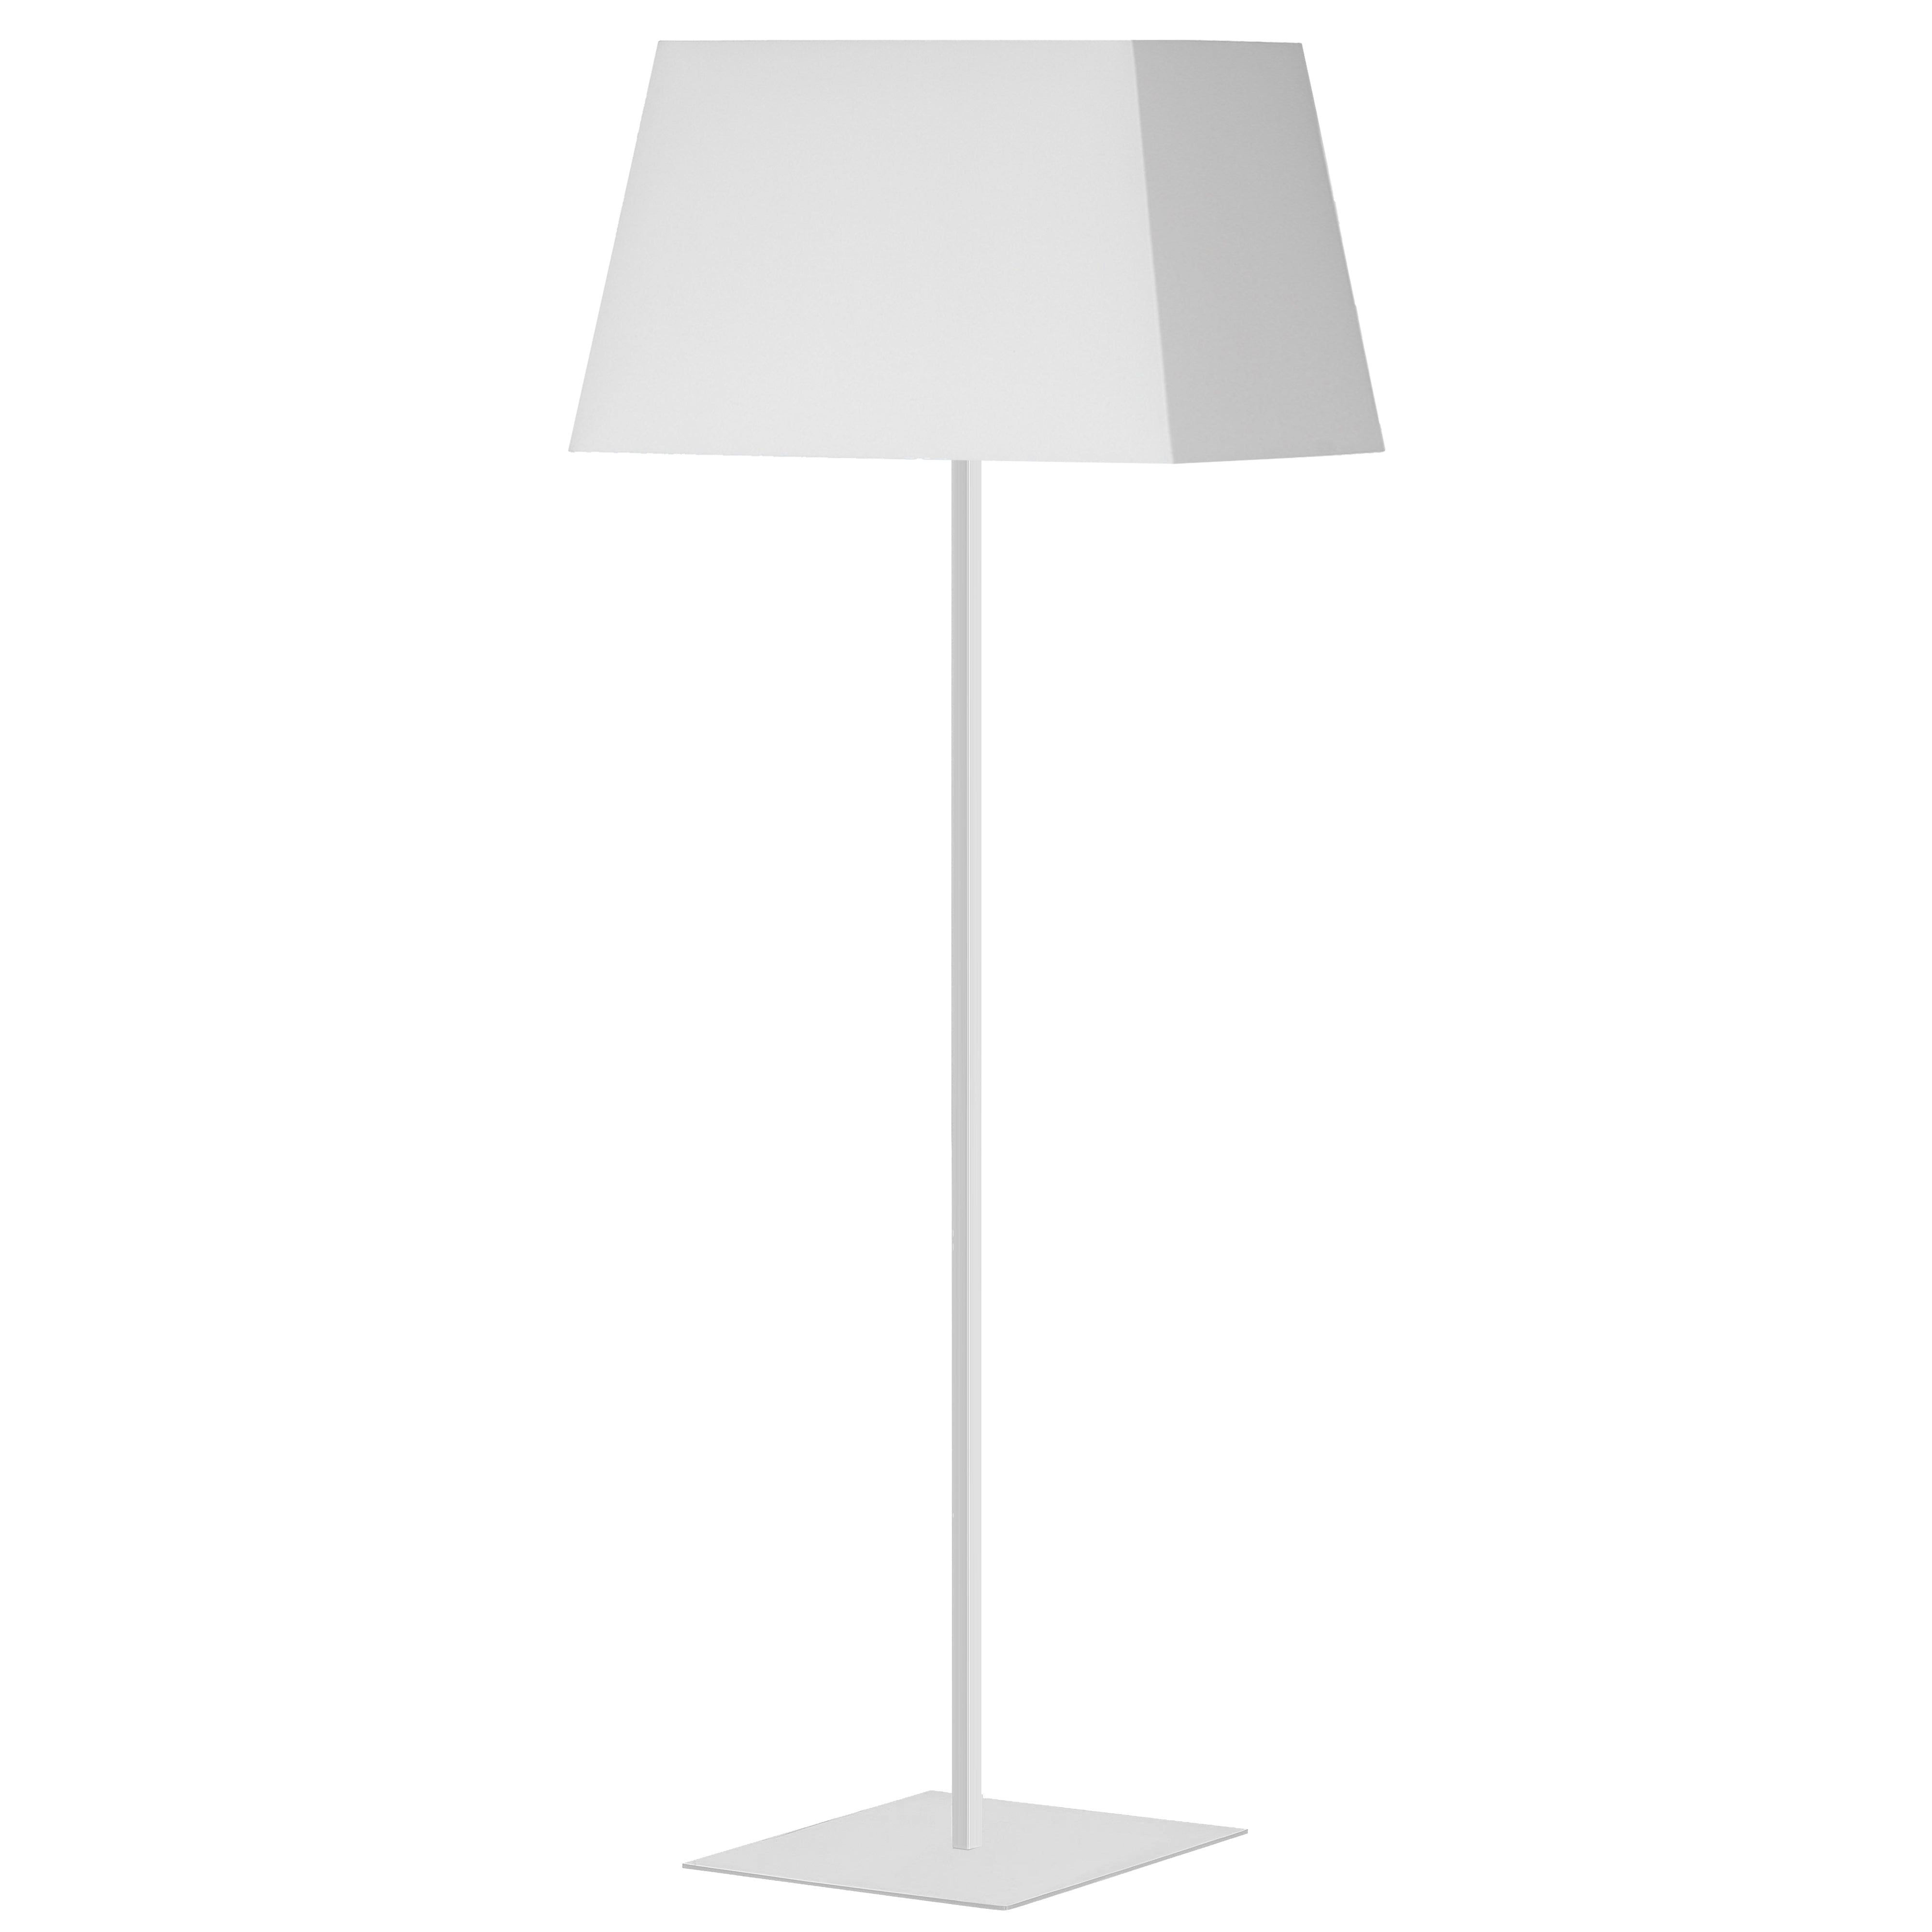 GRETCHEN Lampe sur pied Blanc DEL INTÉGRÉ - GTC-S631F-MW-WH | DAINOLITE